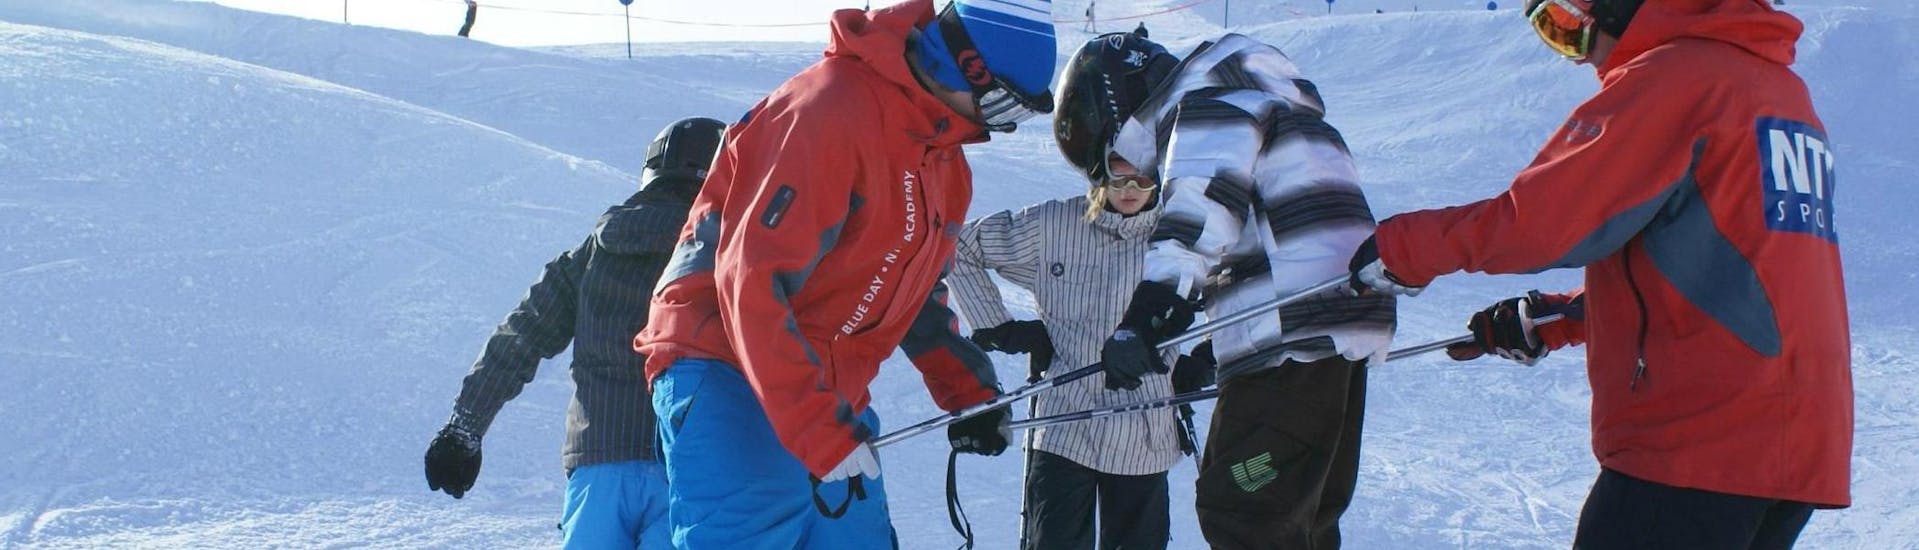 Ein Kind lernt im Kinder Skikurs "NTC Freestyle Camp" (9-16 Jahre) von zwei Skilehrern der NTC Skischule Oberstdorf die Grundlagen des Freestyle-Skifahrens.